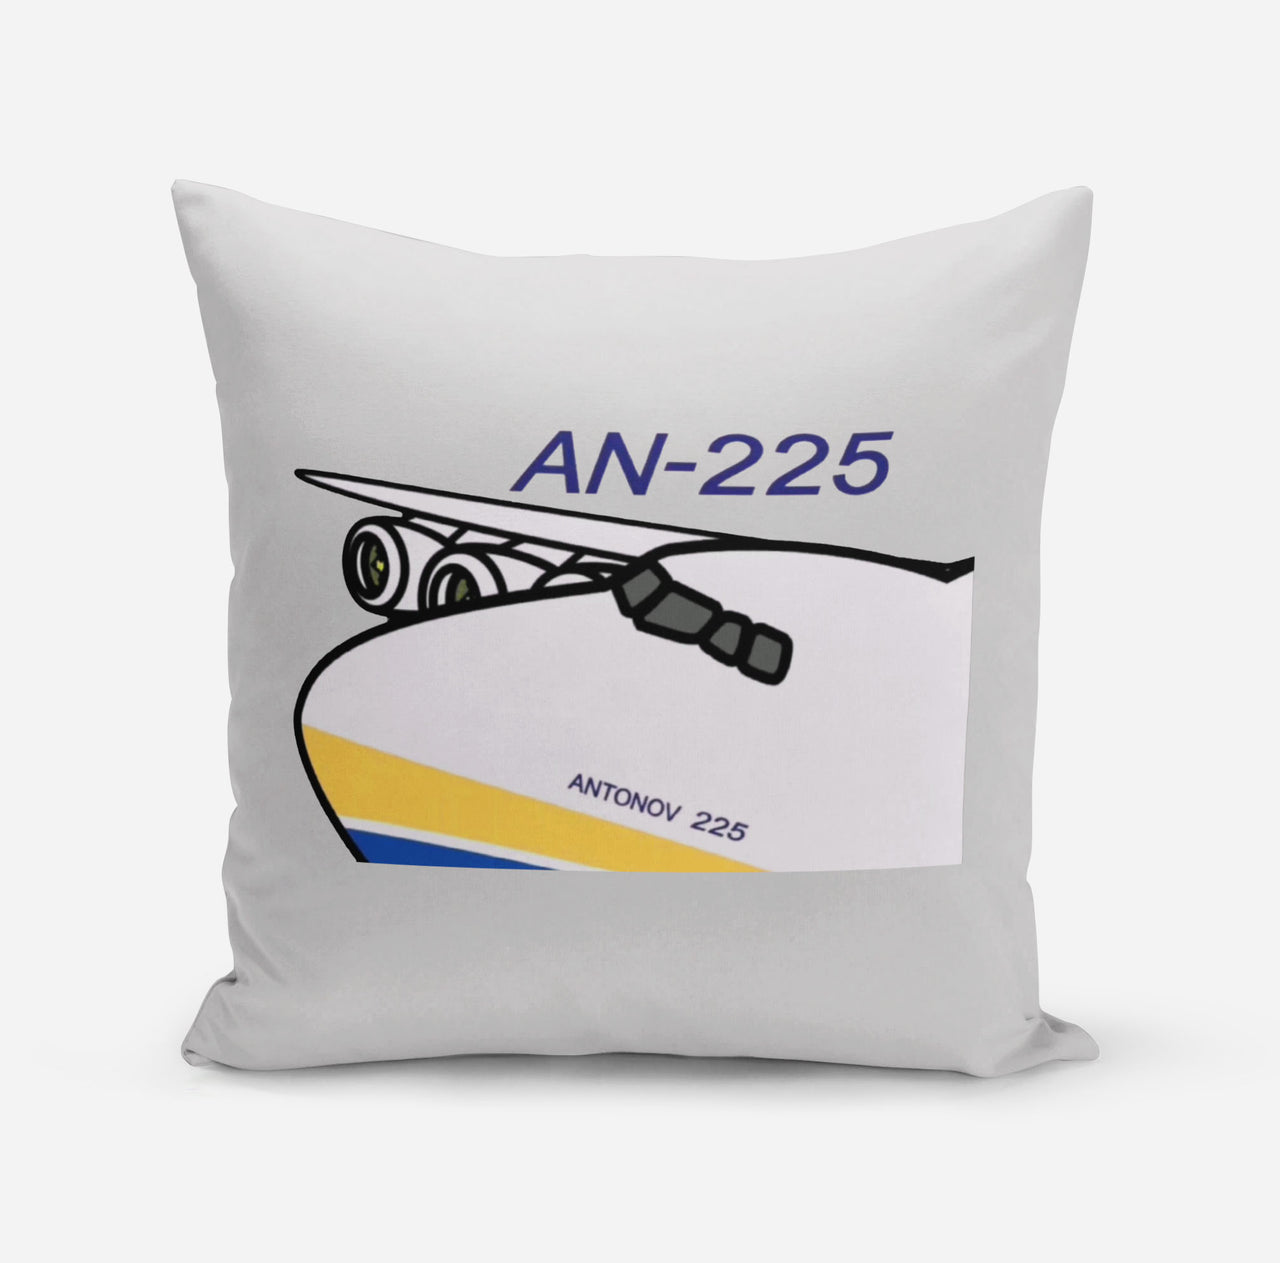 Antonov AN-225 (11) Designed Pillows